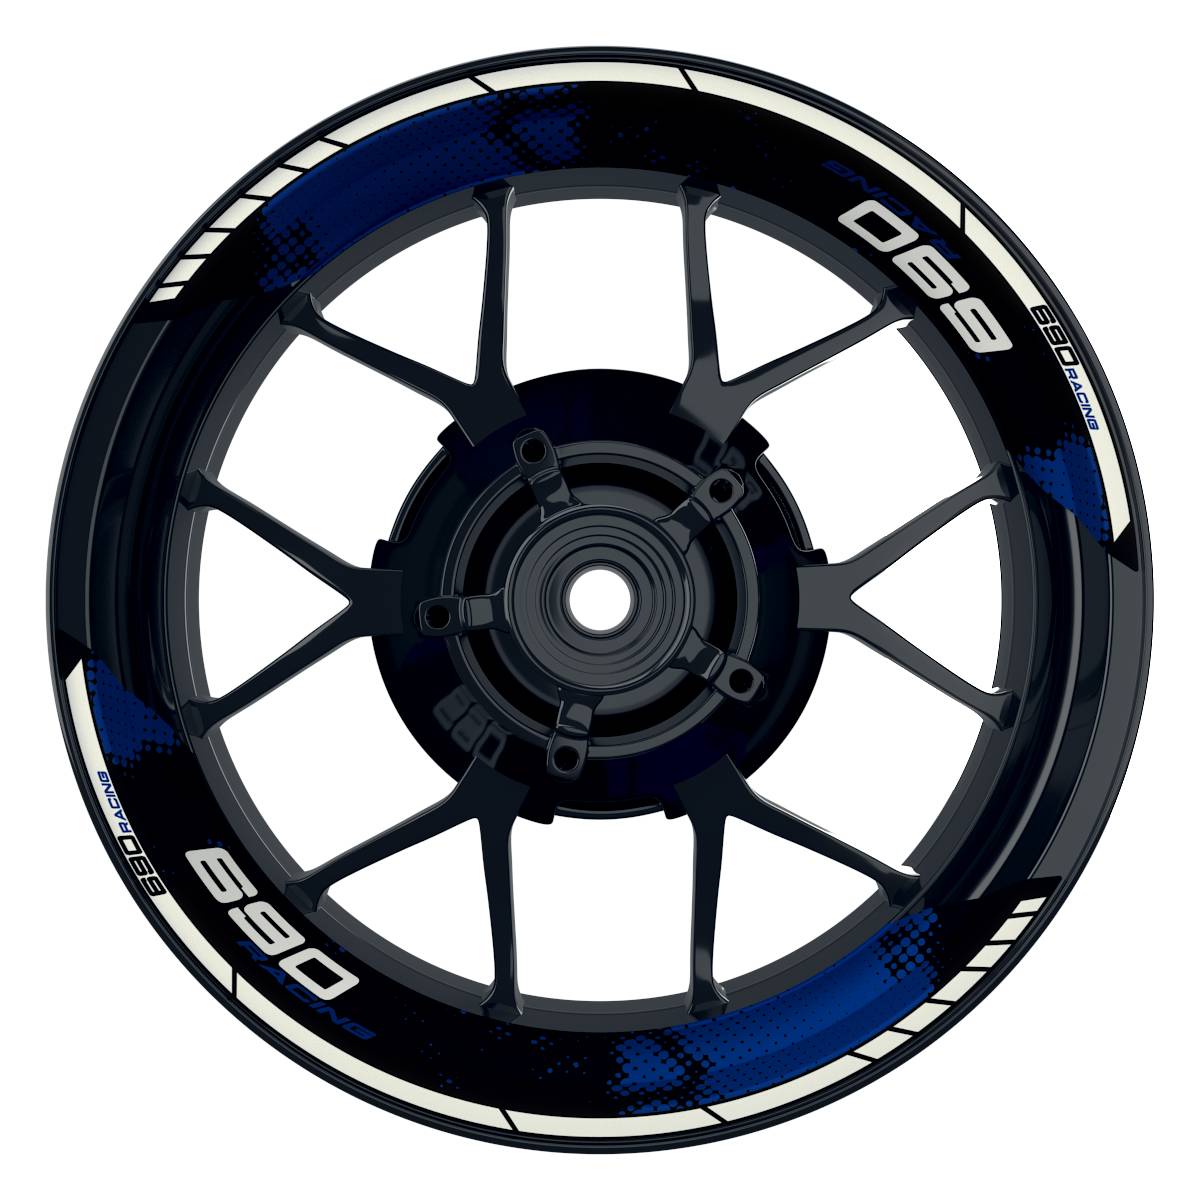 KTM Racing 690 Dots schwarz blau Frontansicht